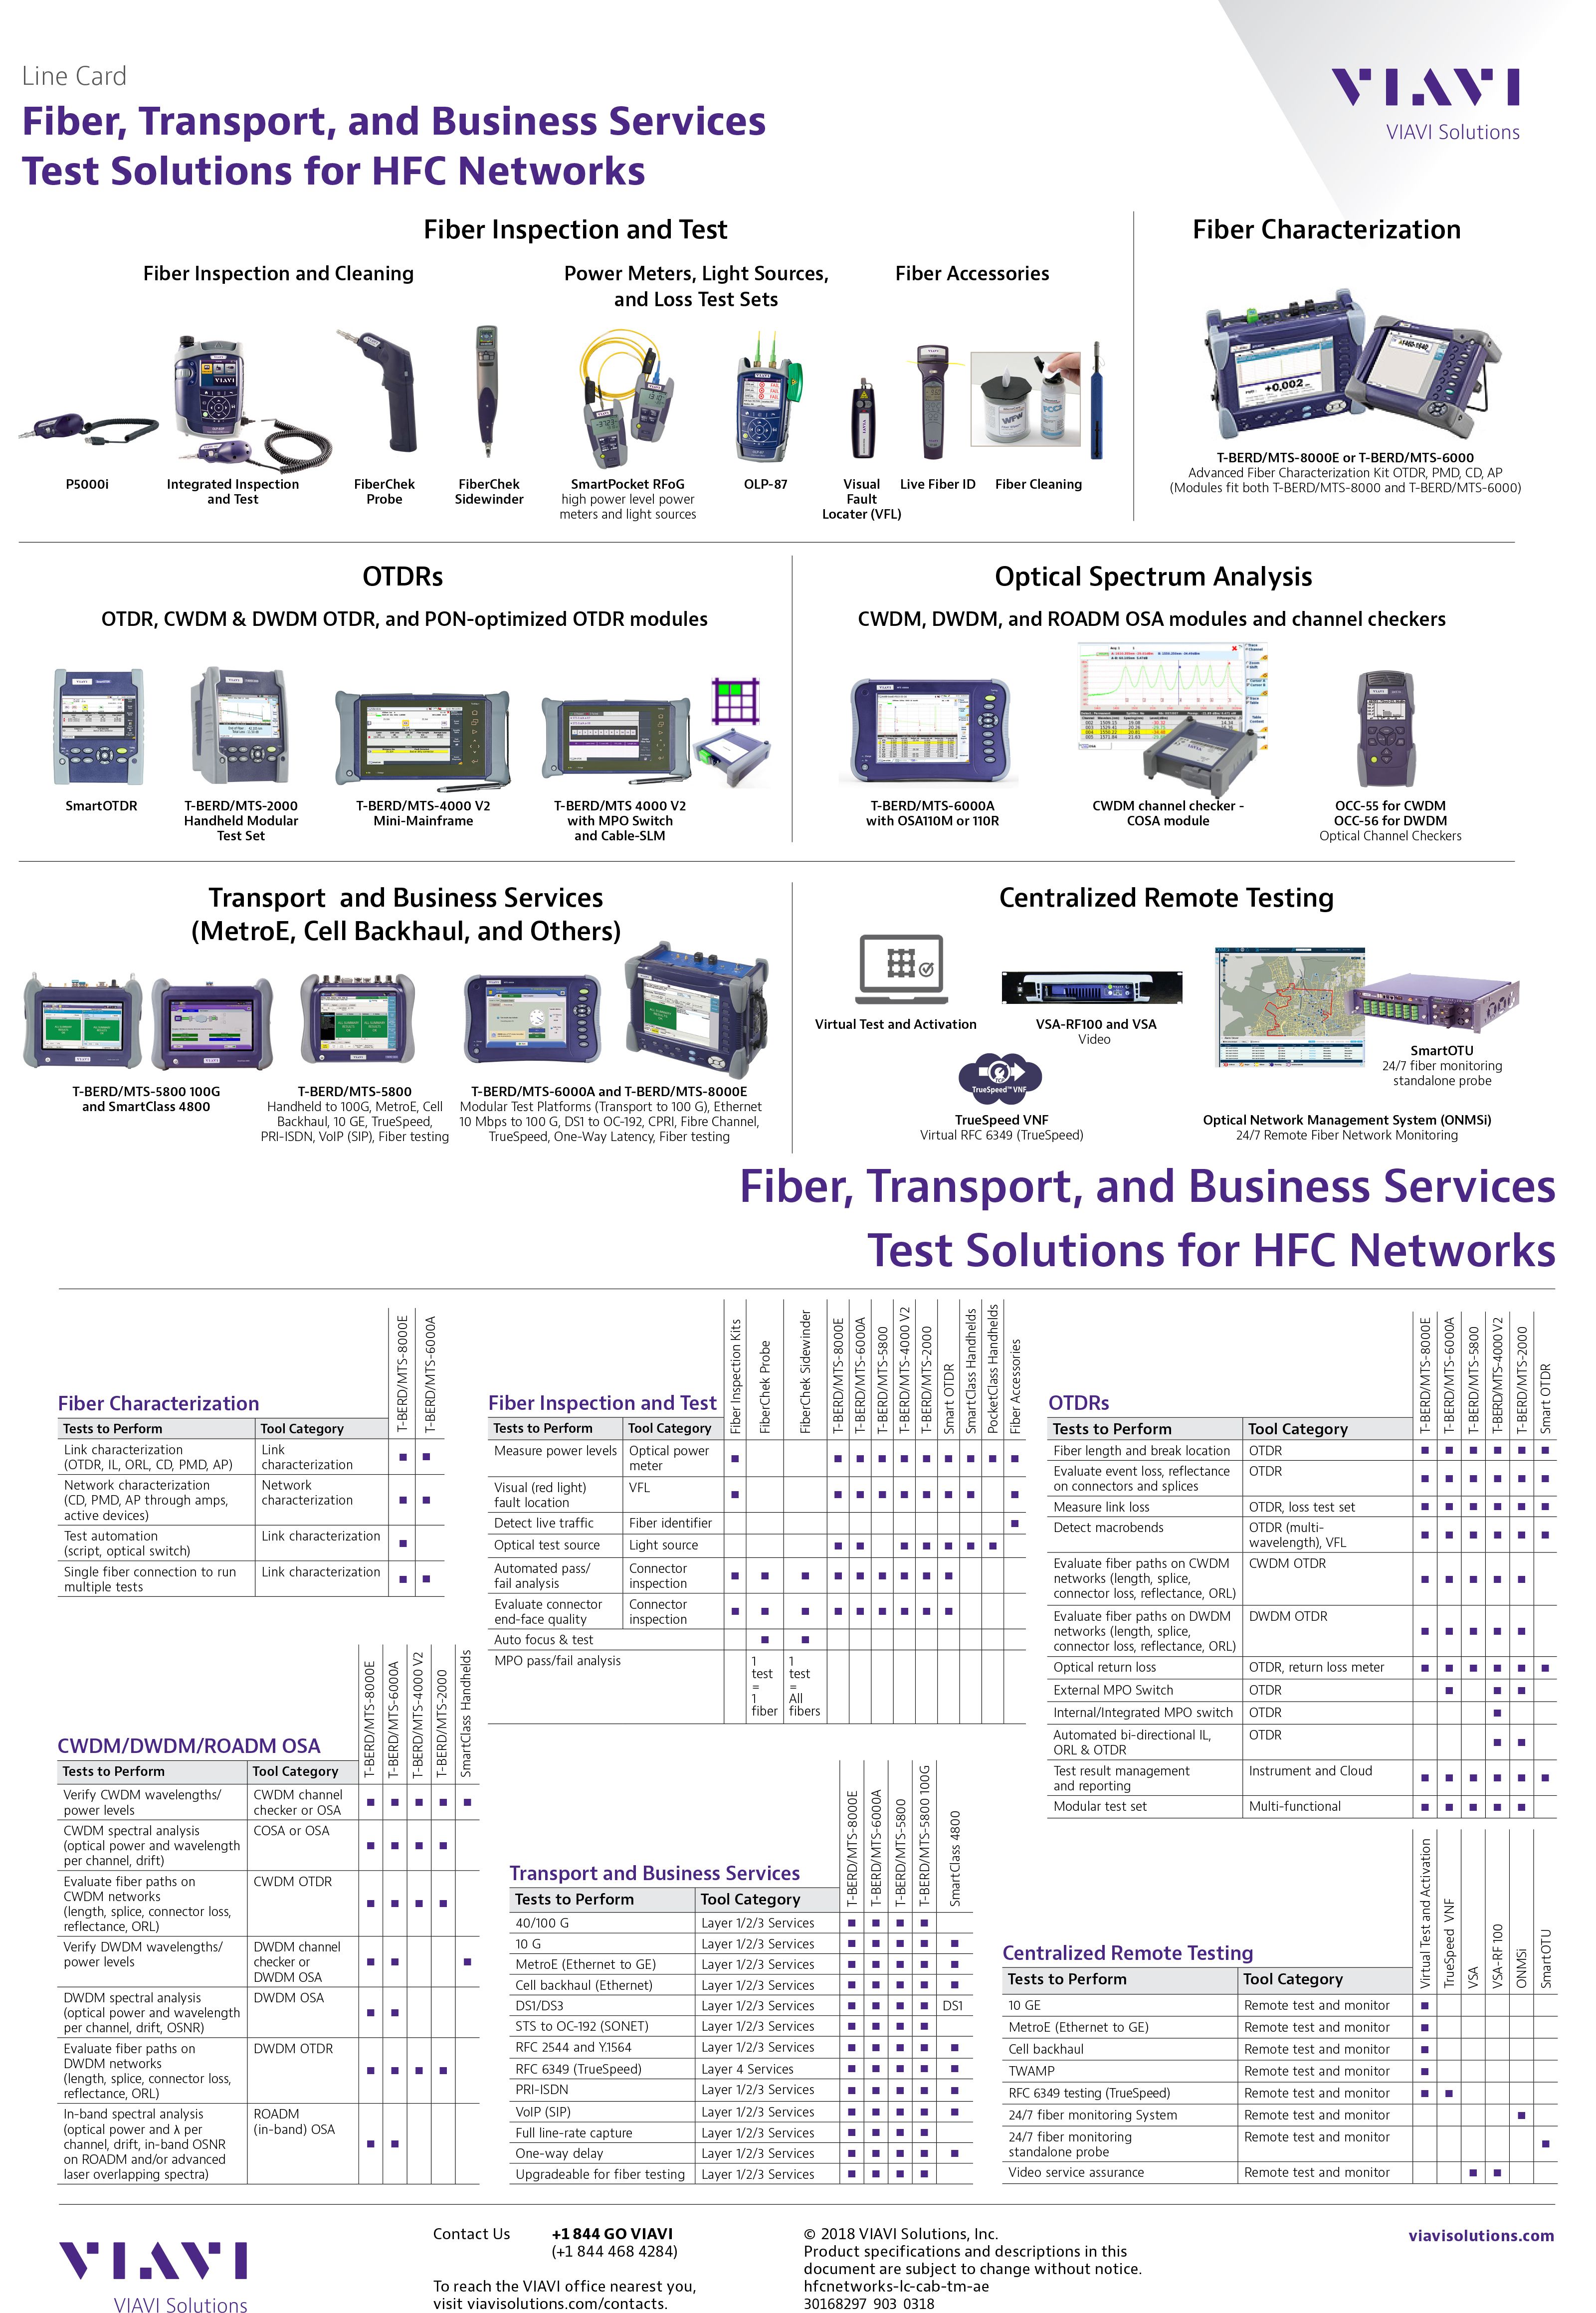 fiber-transport-and-business-services-test-solutions-hfc-networks-line-card-en-1.jpeg